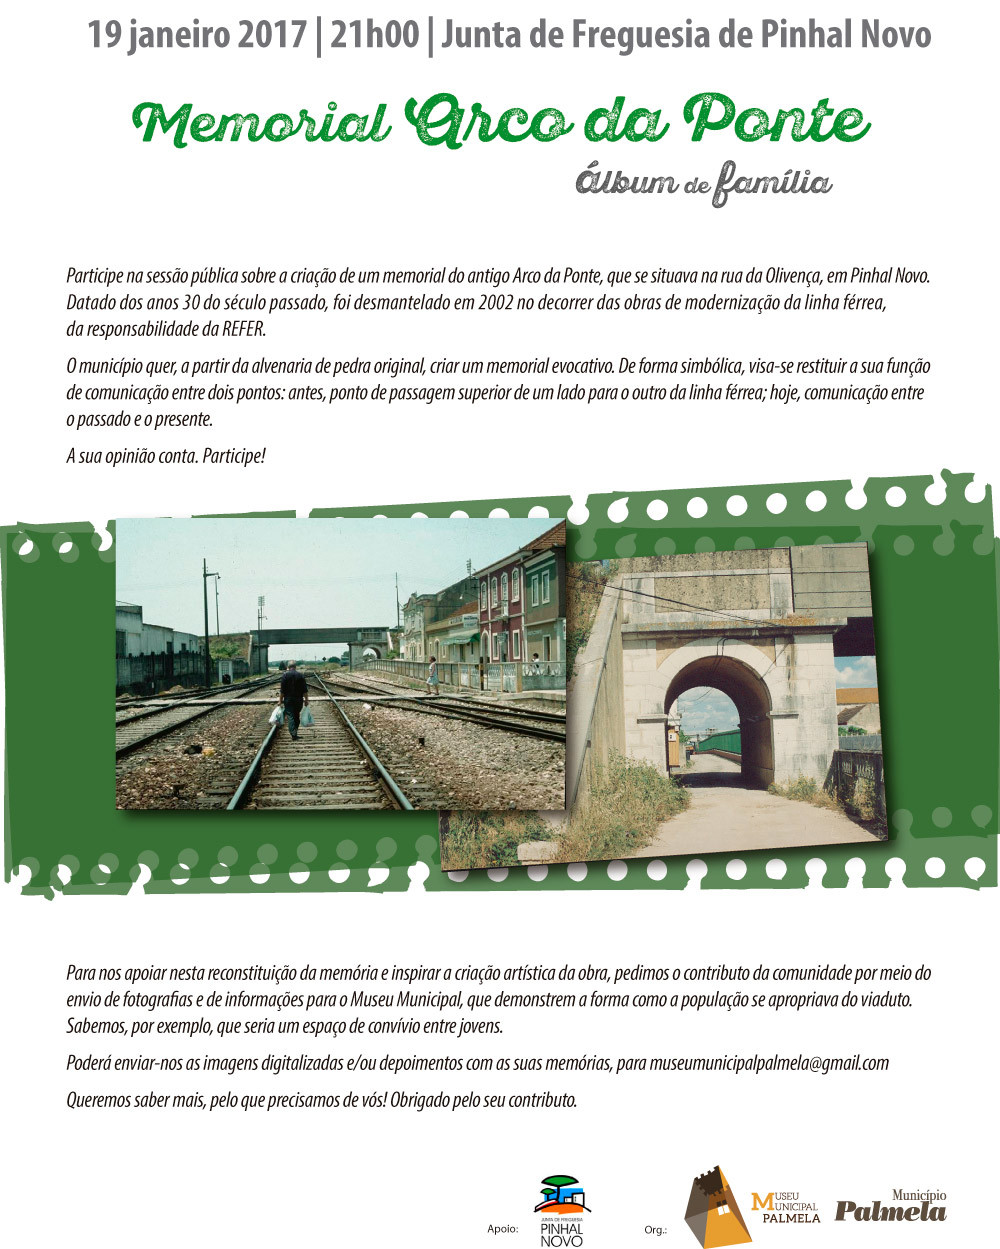 Município promove discussão pública sobre memorial do Arco da Ponte de Pinhal Novo